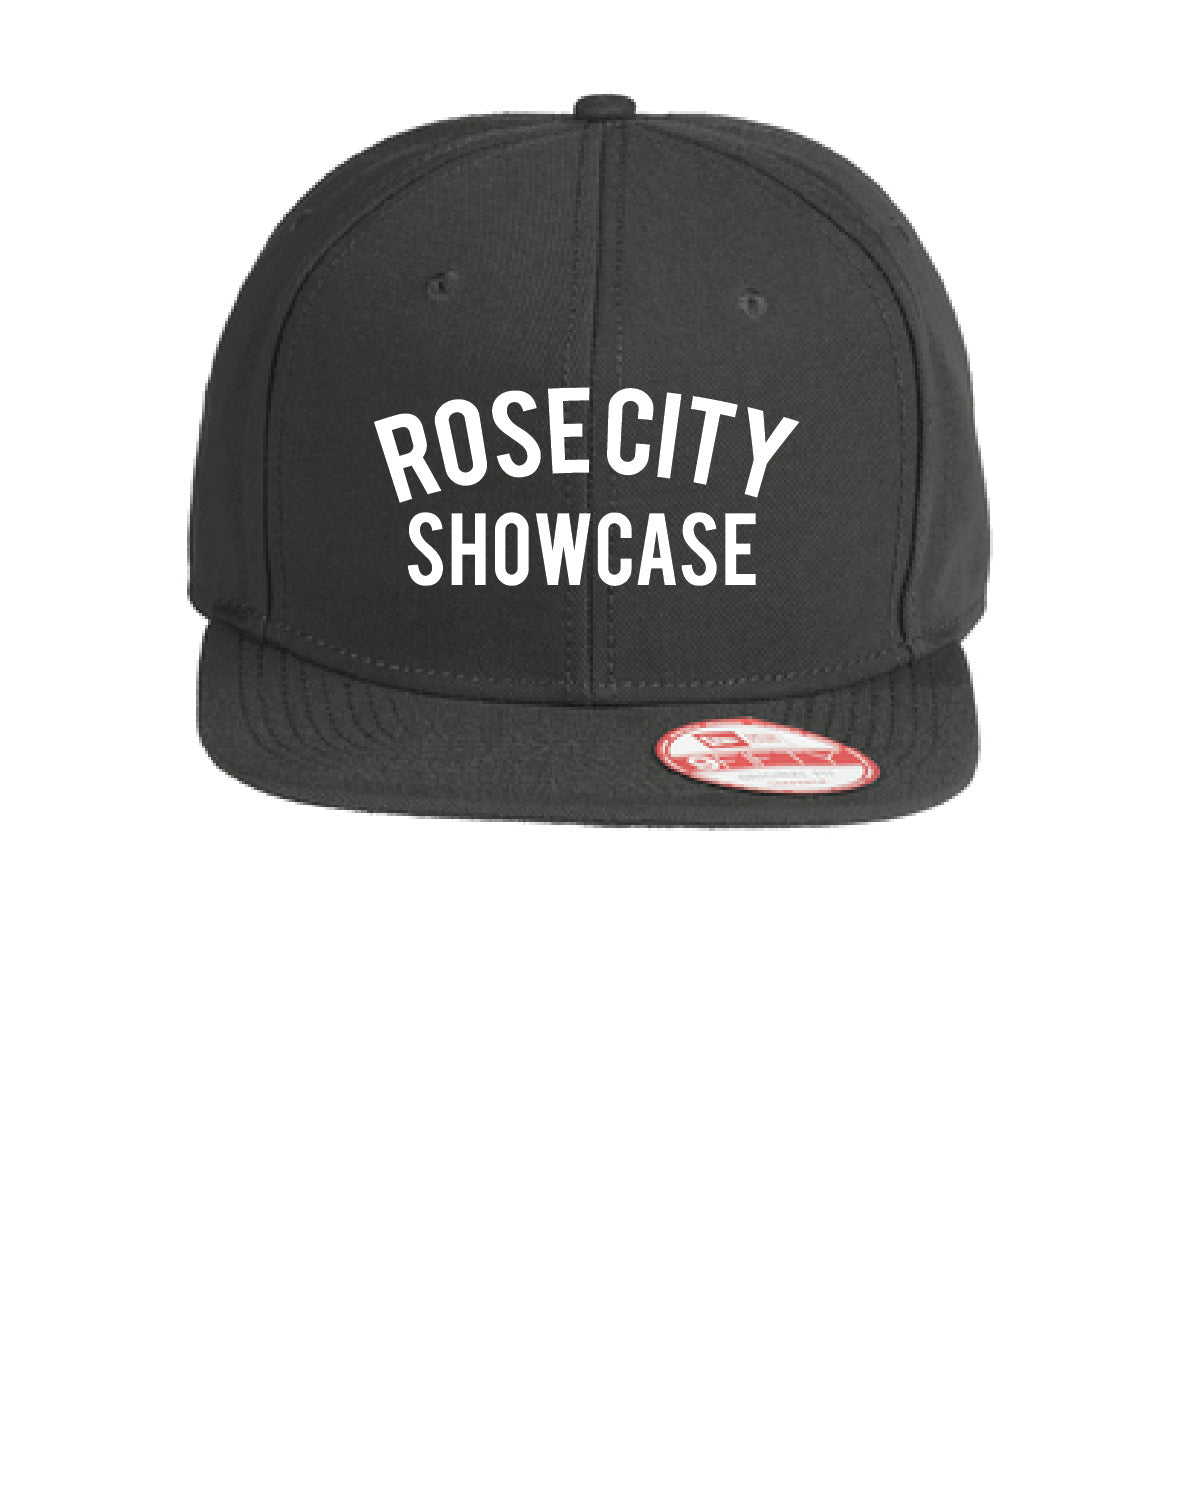 Rose City Showcase Snapback